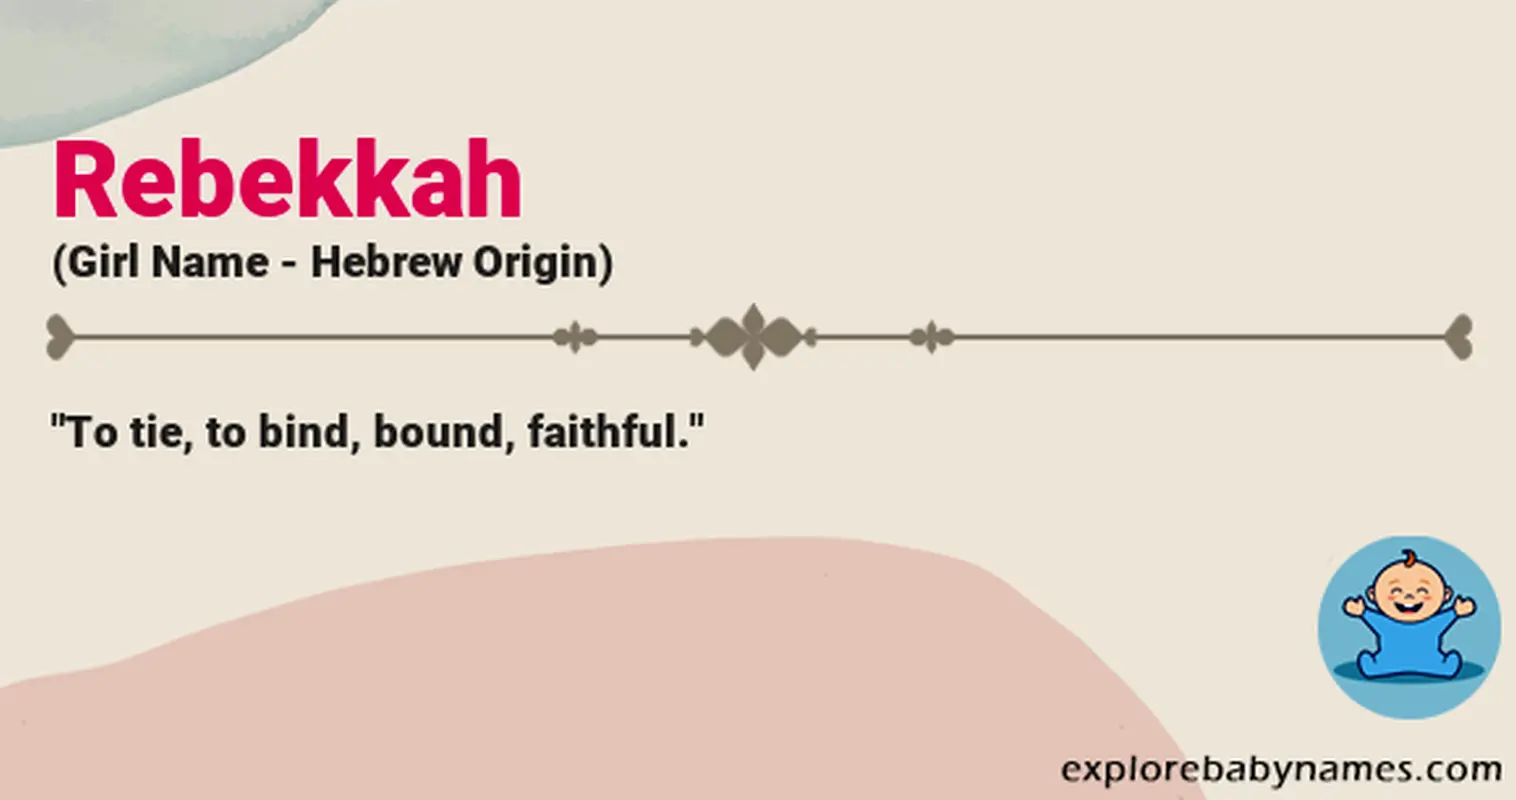 Meaning of Rebekkah